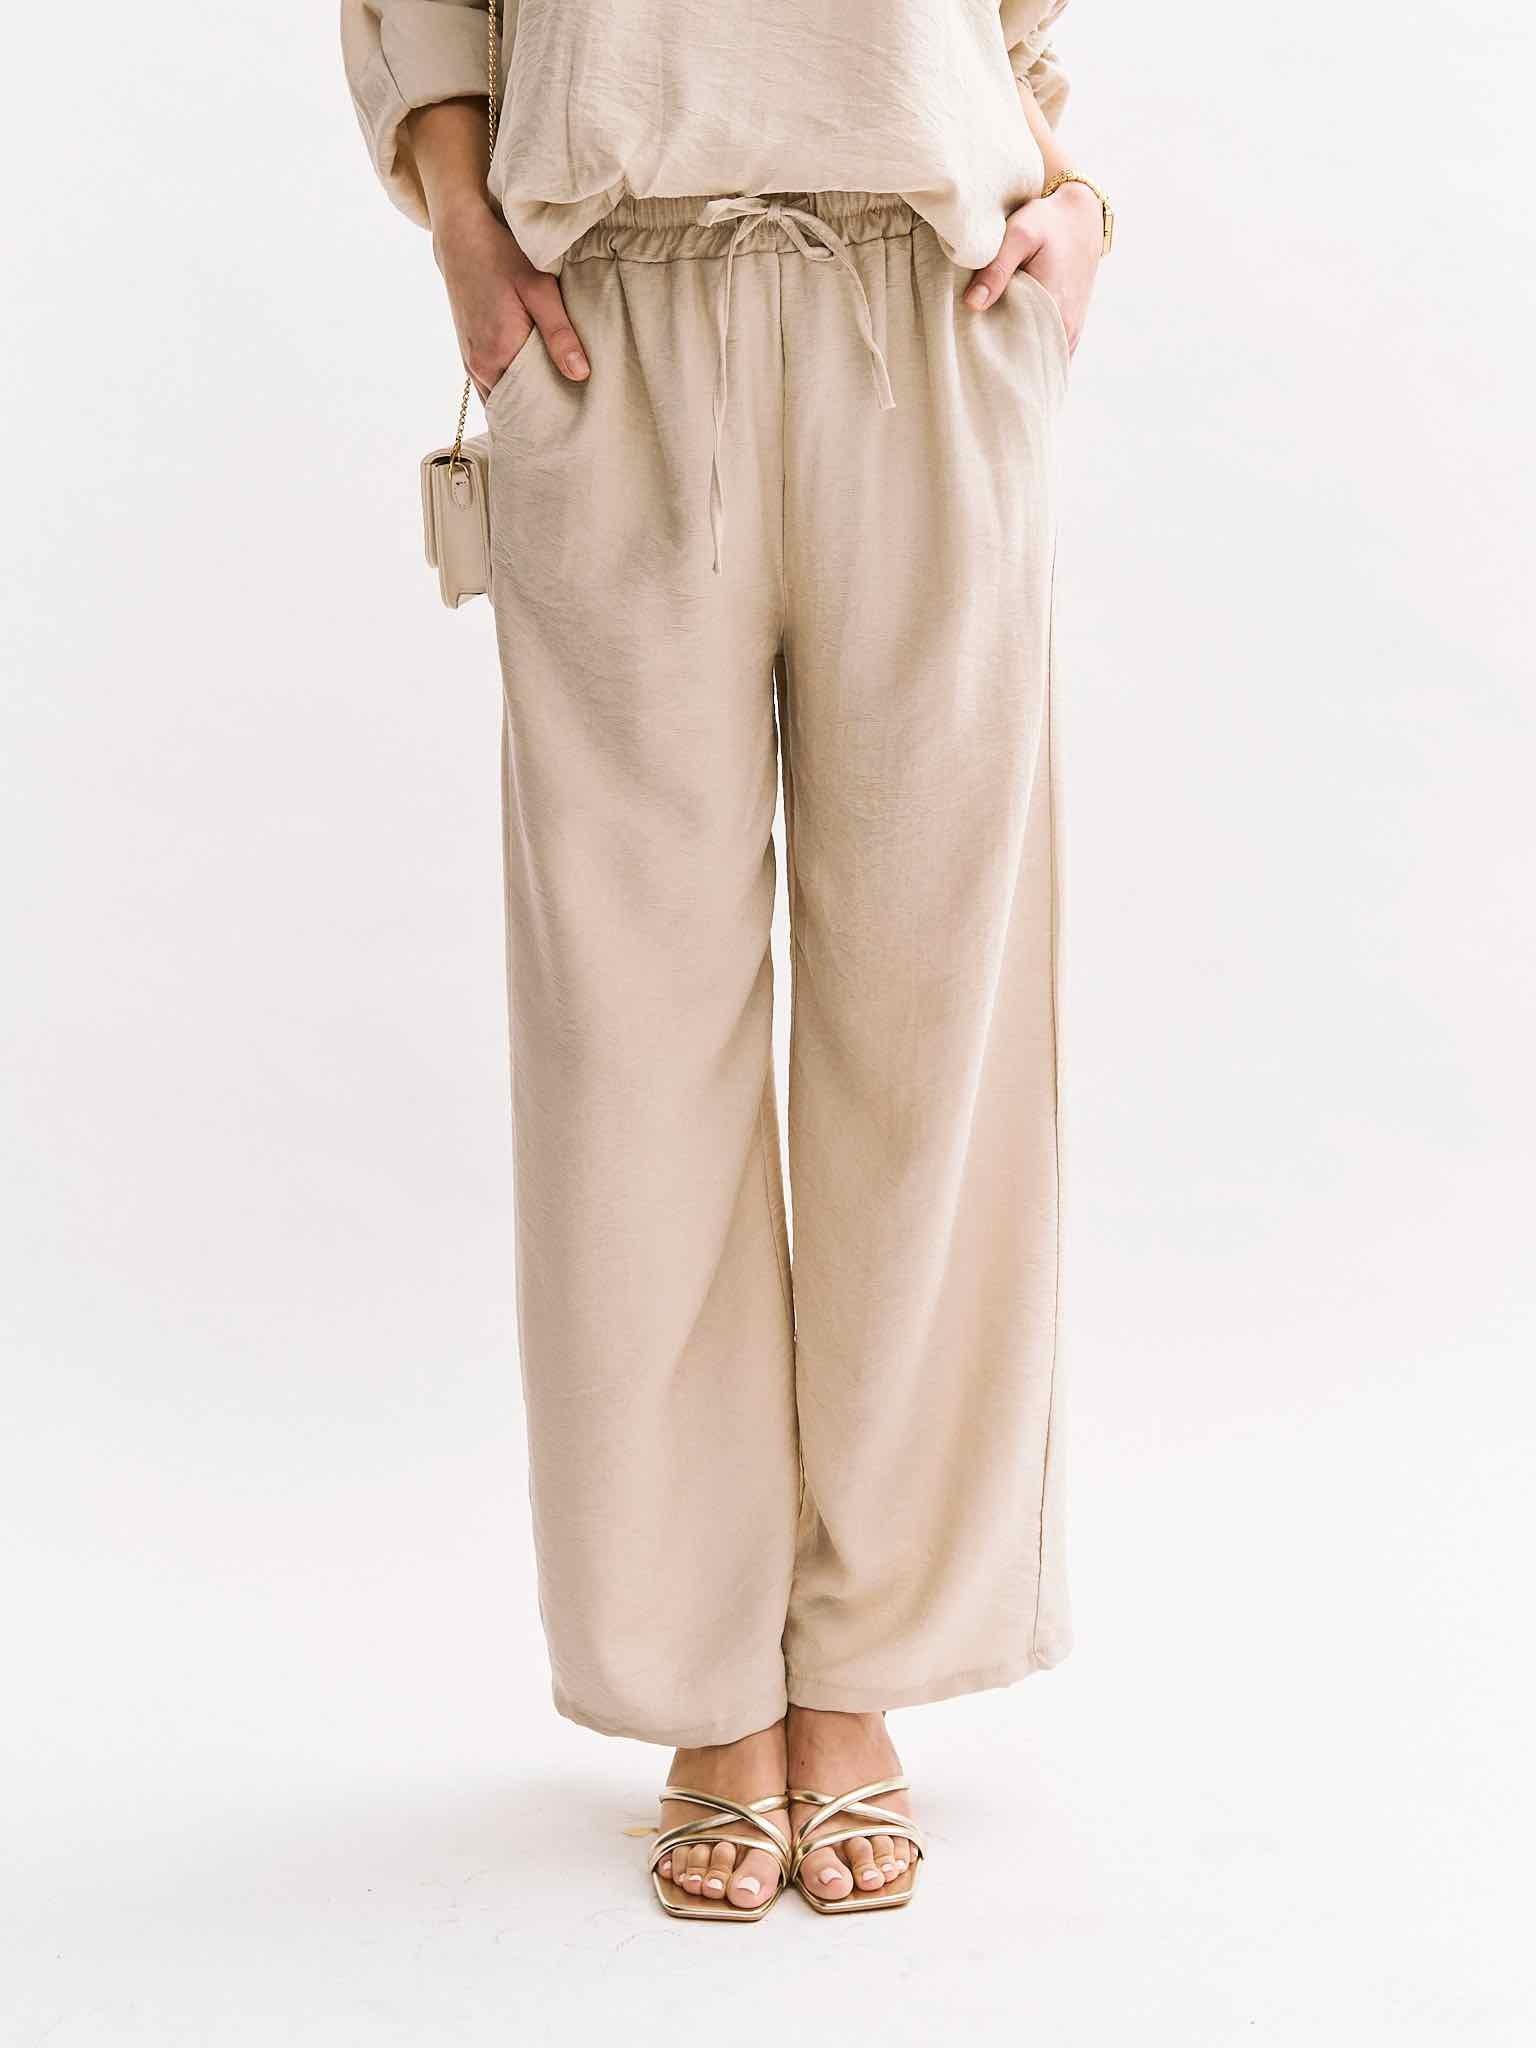 Spring Pants für Damen in Beige von Maingold Basics